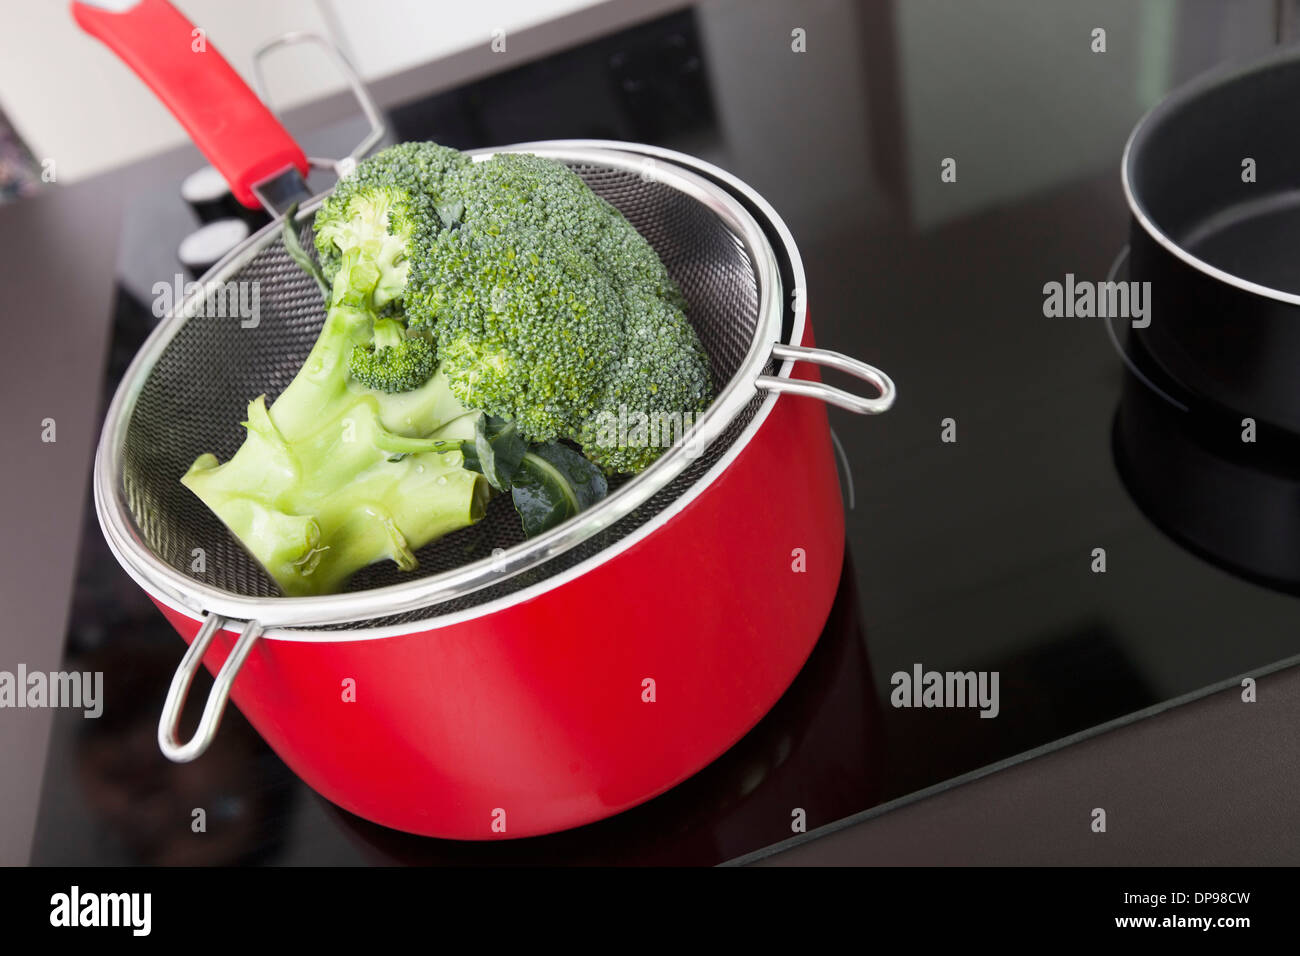 Le brocoli dans une casserole sur la cuisinière en cuisine Banque D'Images